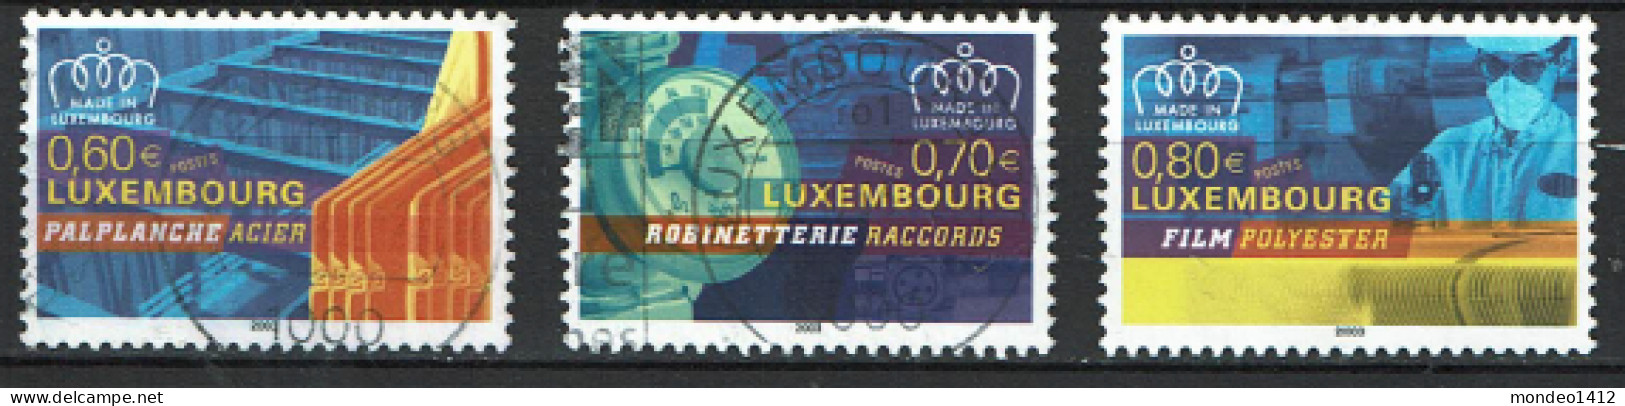 Luxembourg 2003 - YT 1565/1567 - Made In Luxemburg, Steel, Acier, Polyester, Raccords - Gebruikt